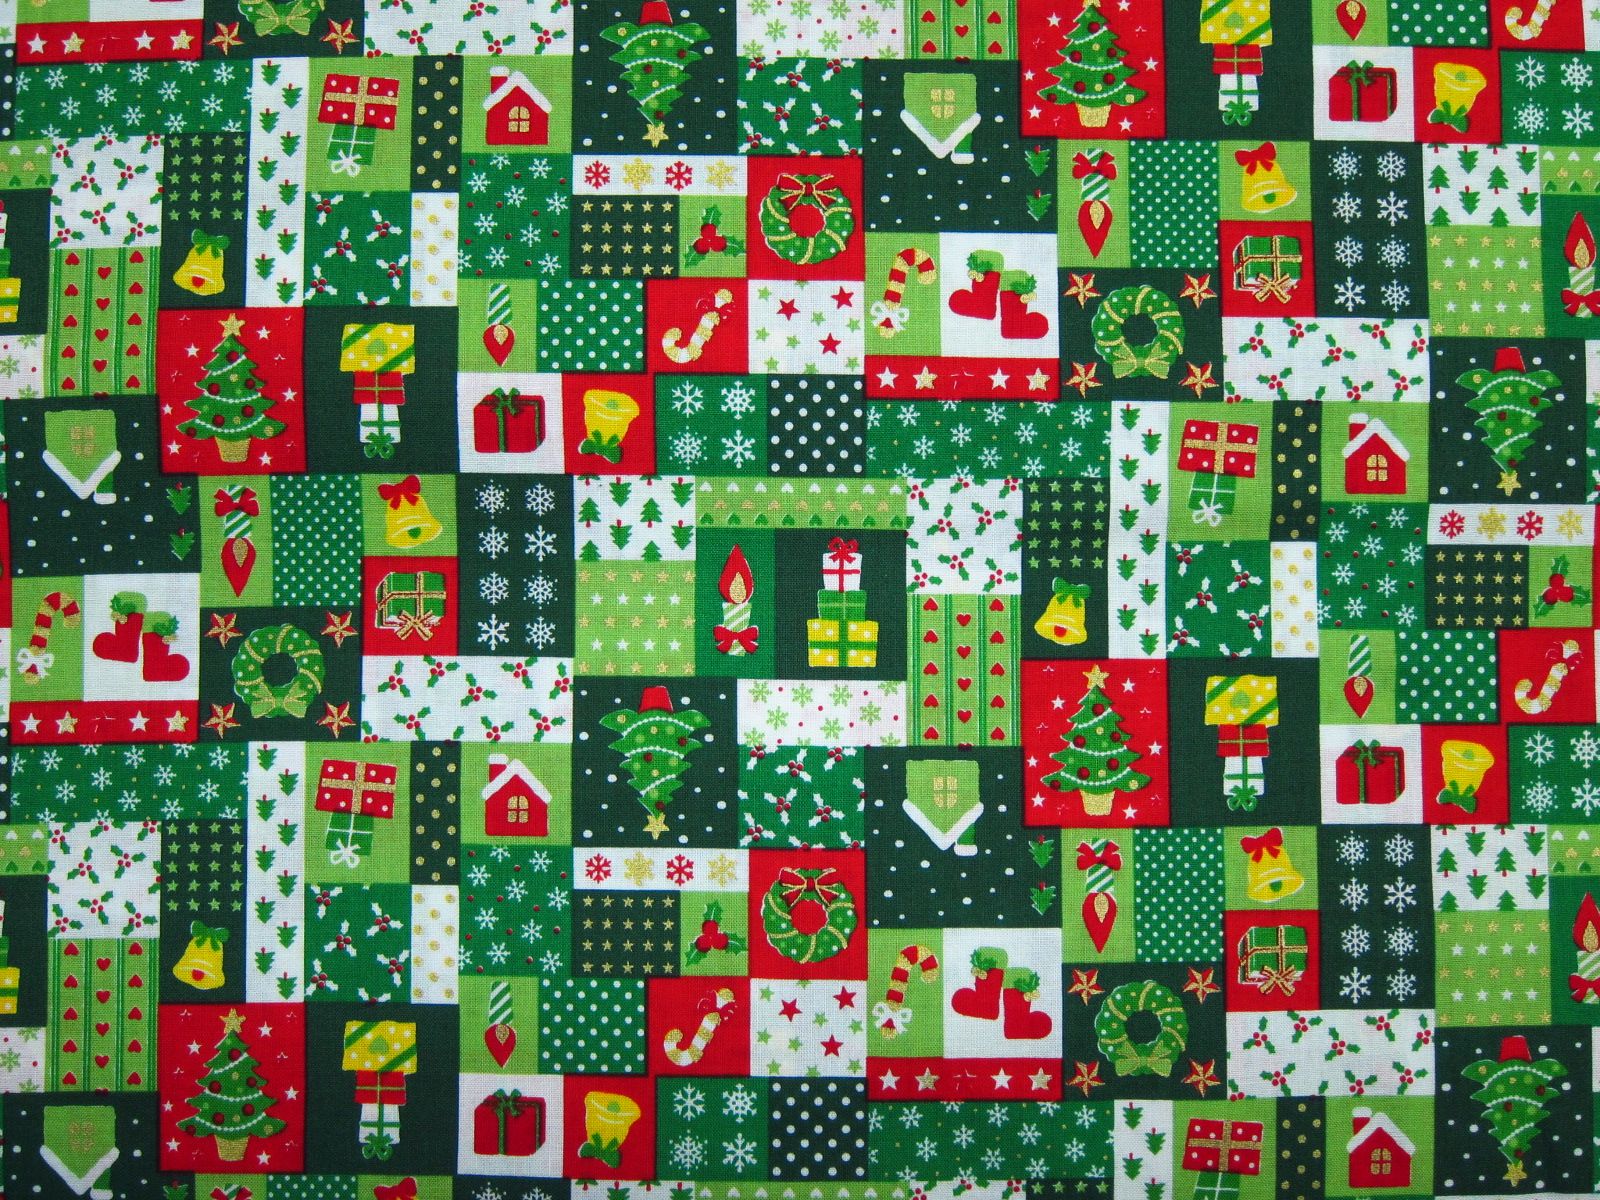 日本進口平織綿布-溫馨聖誕節-深綠、淺綠、黑-100%純綿、日本製造